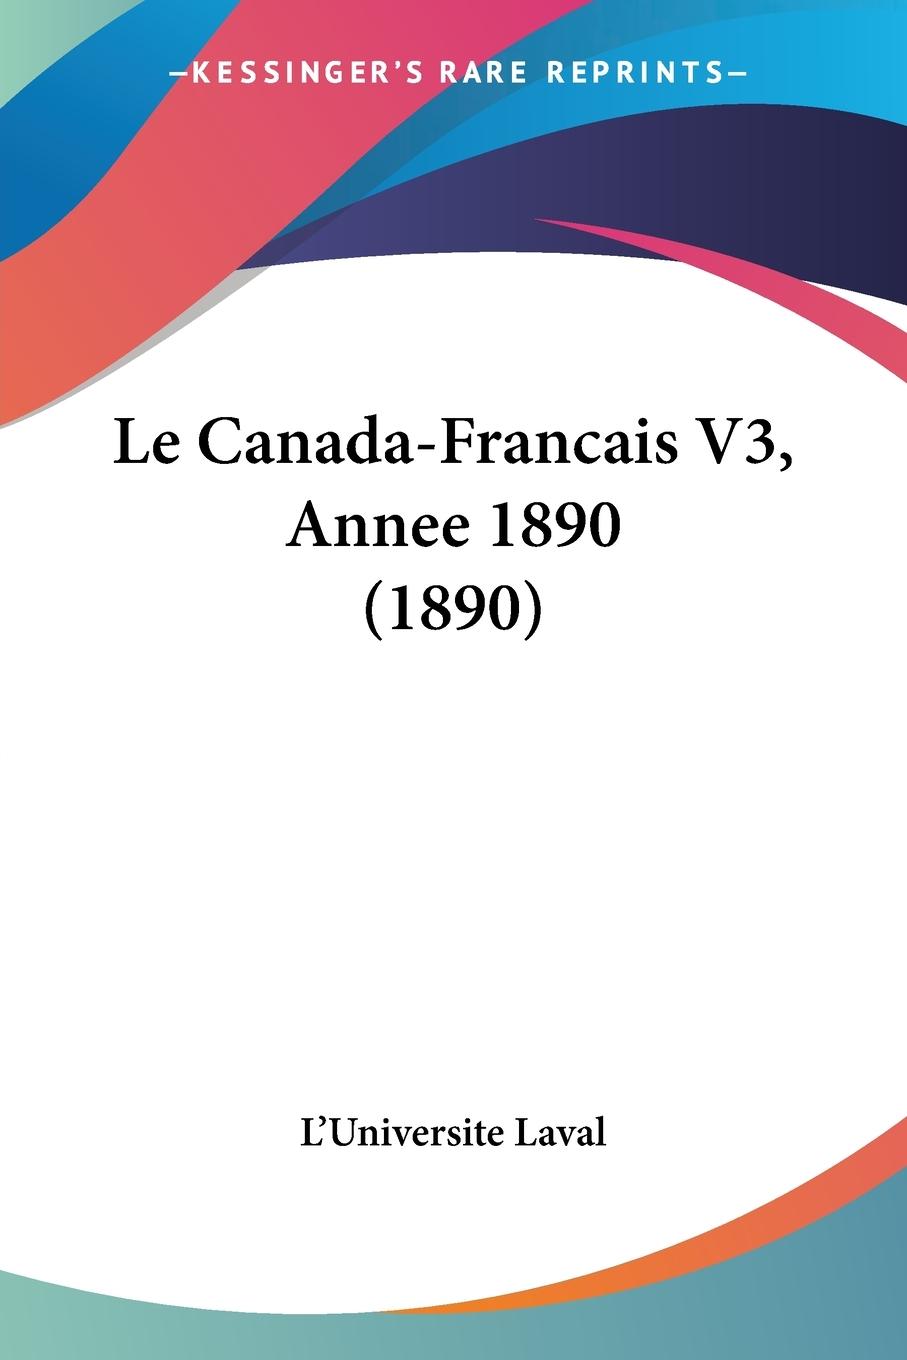 Le Canada-Francais V3, Annee 1890 (1890) - L Universite Laval